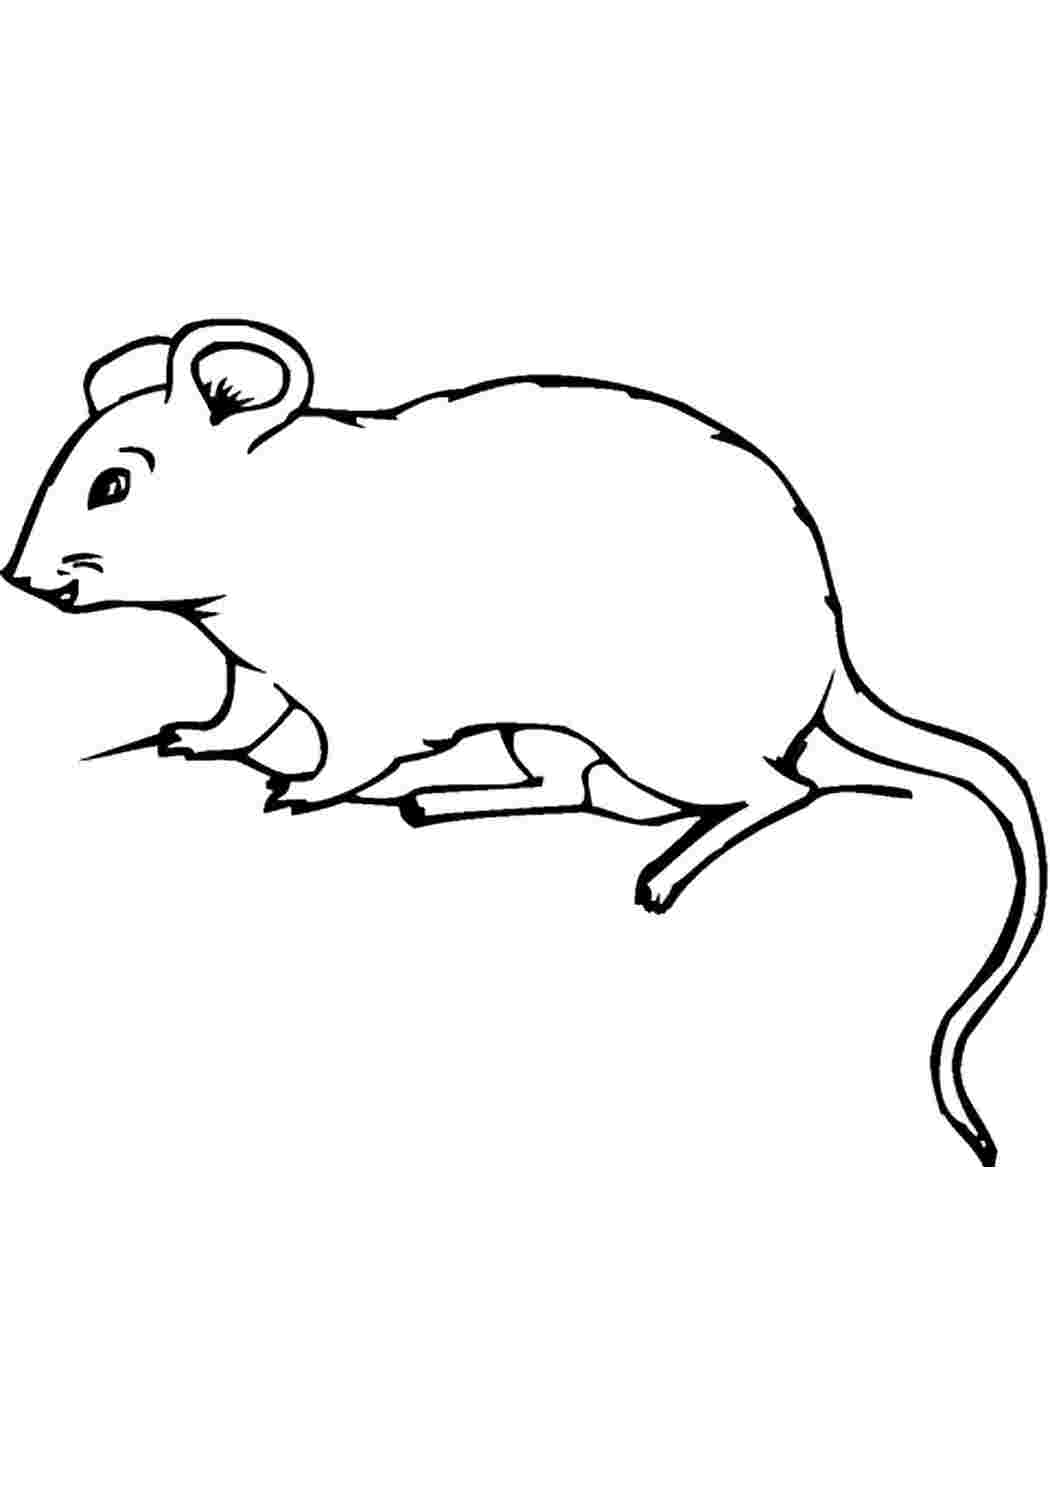 Раскраска мышь распечатать. Мышь раскраска. Мышь раскраска для детей. Мышка раскраска для детей. Раскраска Миша.